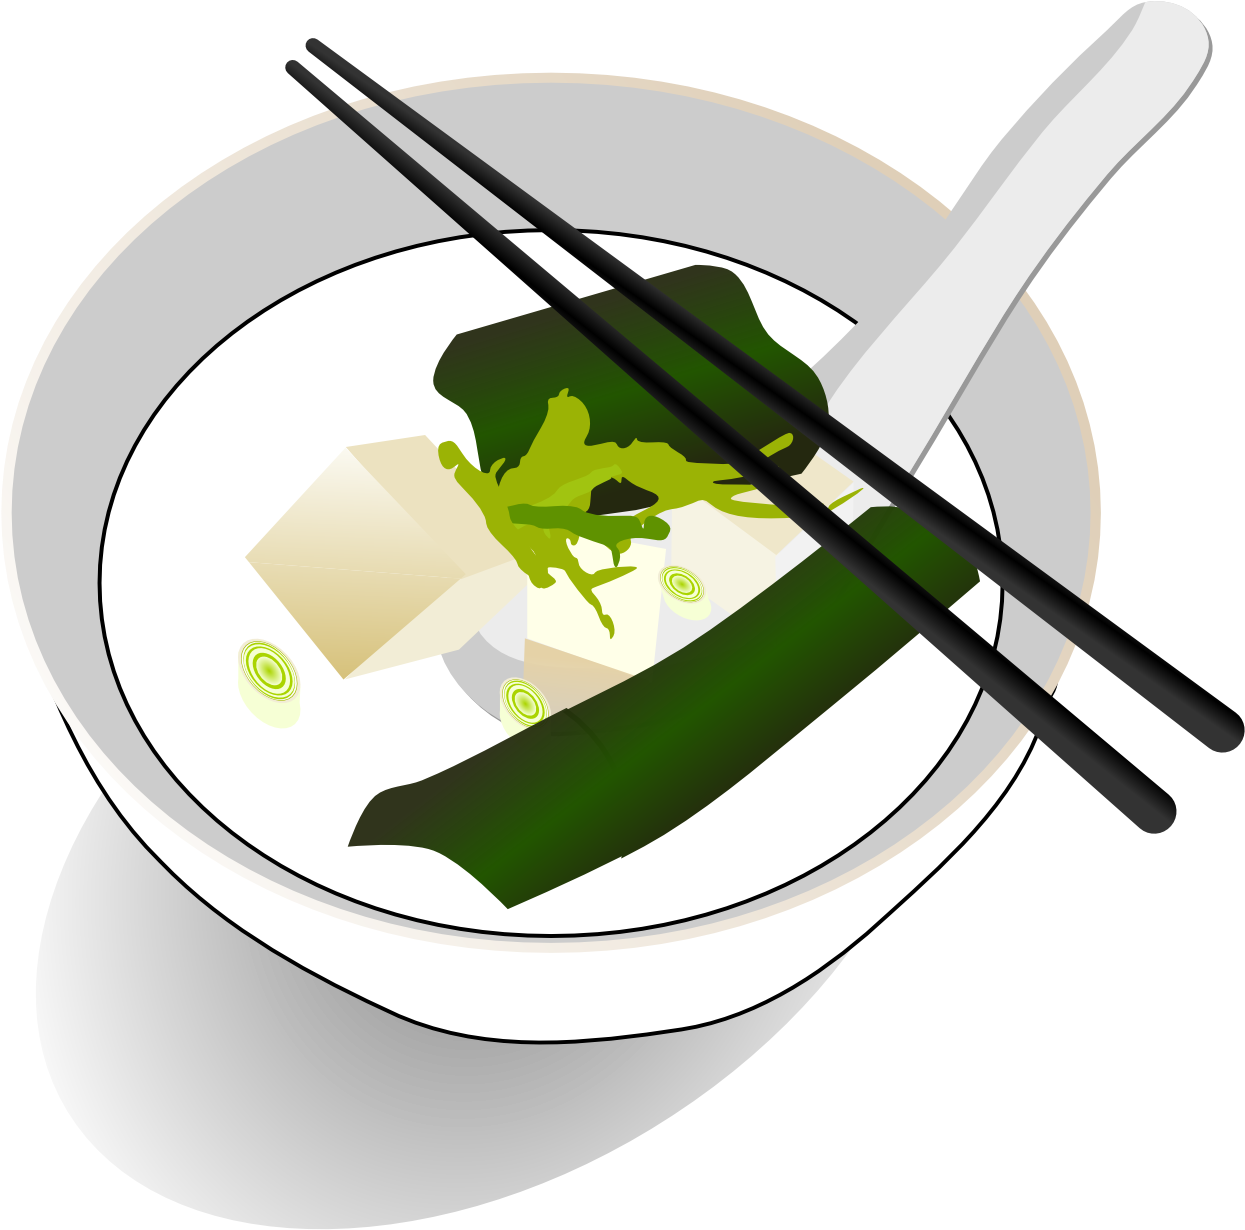 Chinesisches Essen Clipart, Tofu-Suppe, chinesisches Essen